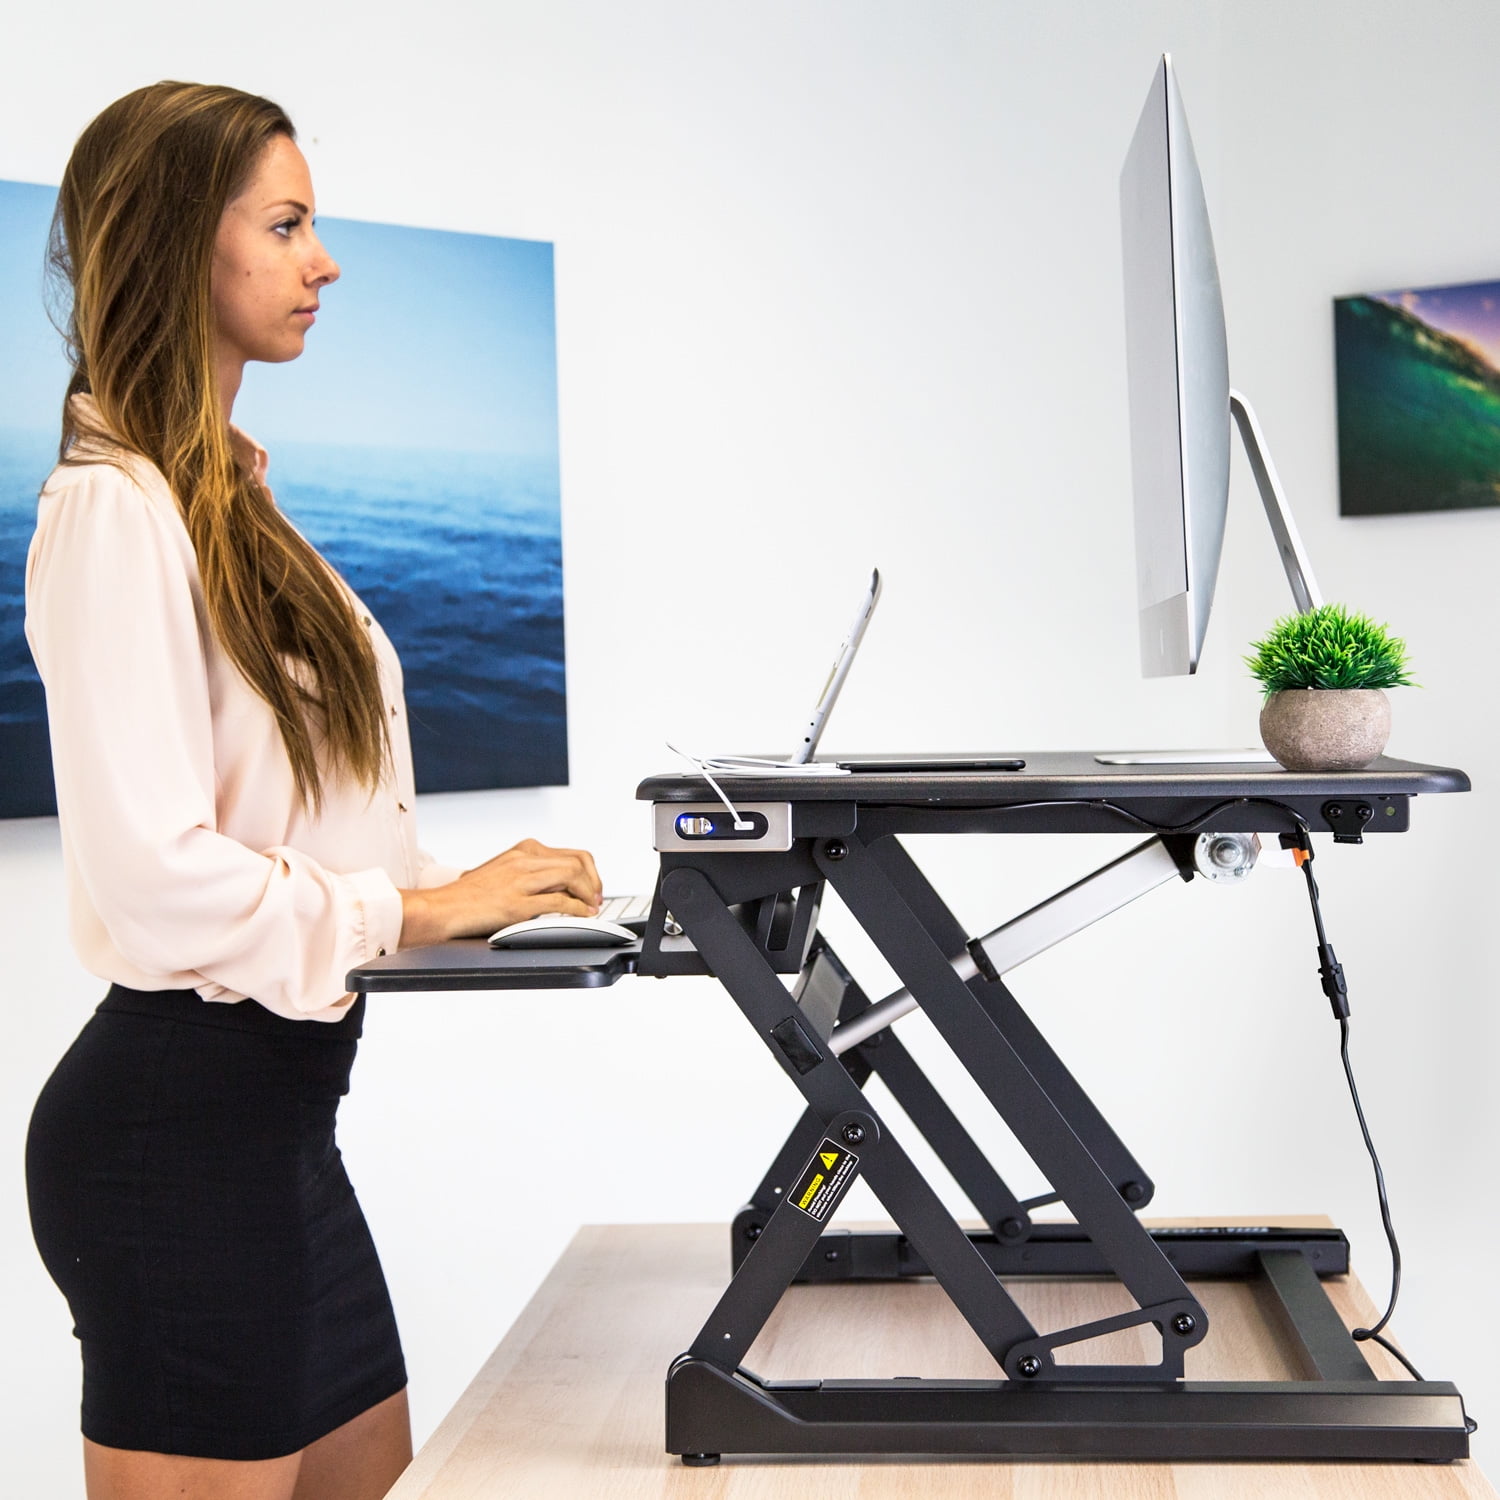 Black Ergonomic Adjustable Workstation MI-7965 Electric Standing Desk Converter Mount-It Motorized Sit Stand Desk with Built in USB Port 